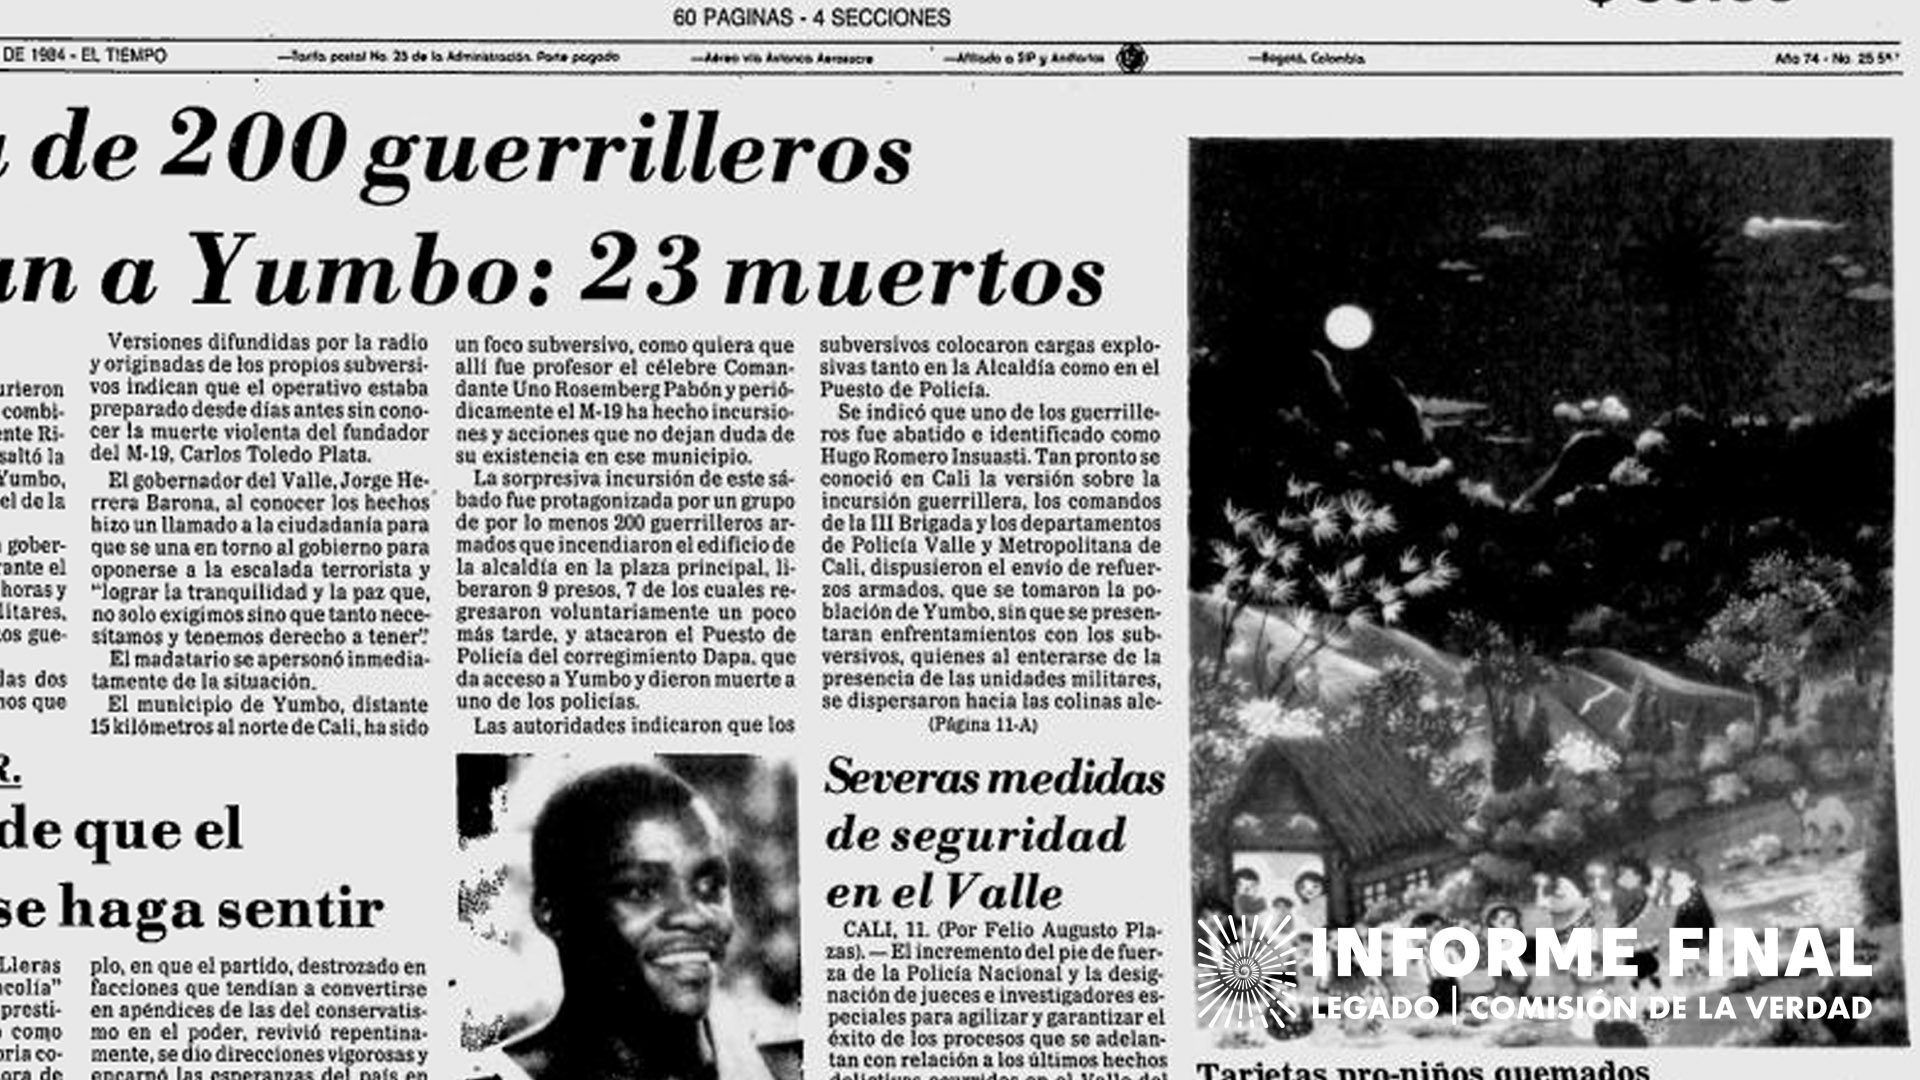 Recorte períodico "El Tiempo" con título "Cerca de 200 guerrilleros asaltan a Yumbo"